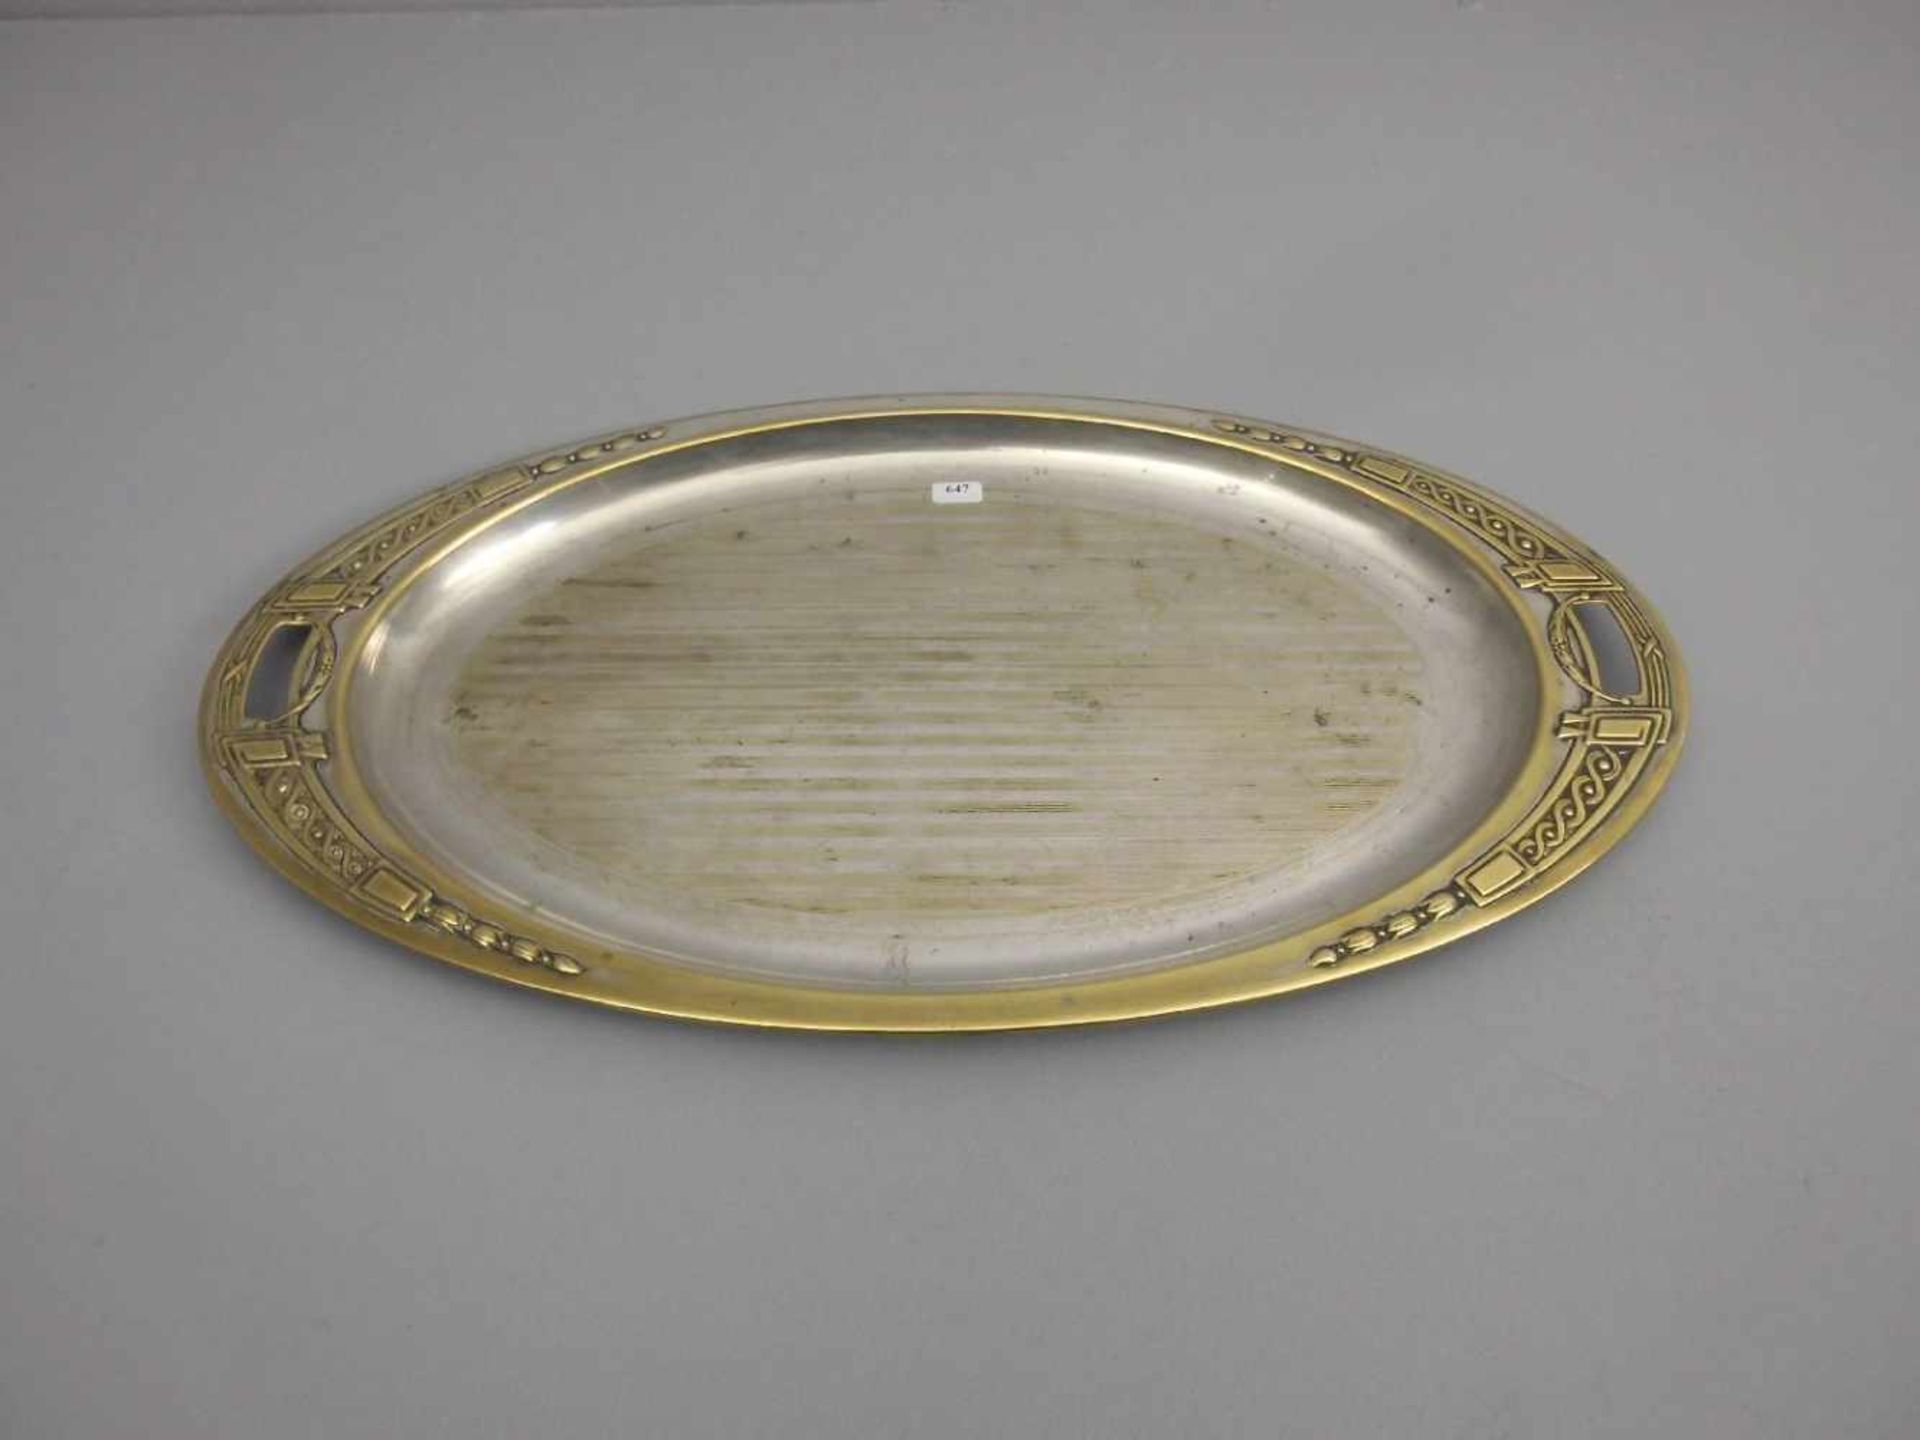 JUGENDSTIL - TABLETT / Art nouveau tray, versilbertes Metall, um 1900. Ovale Form mit seitlichen